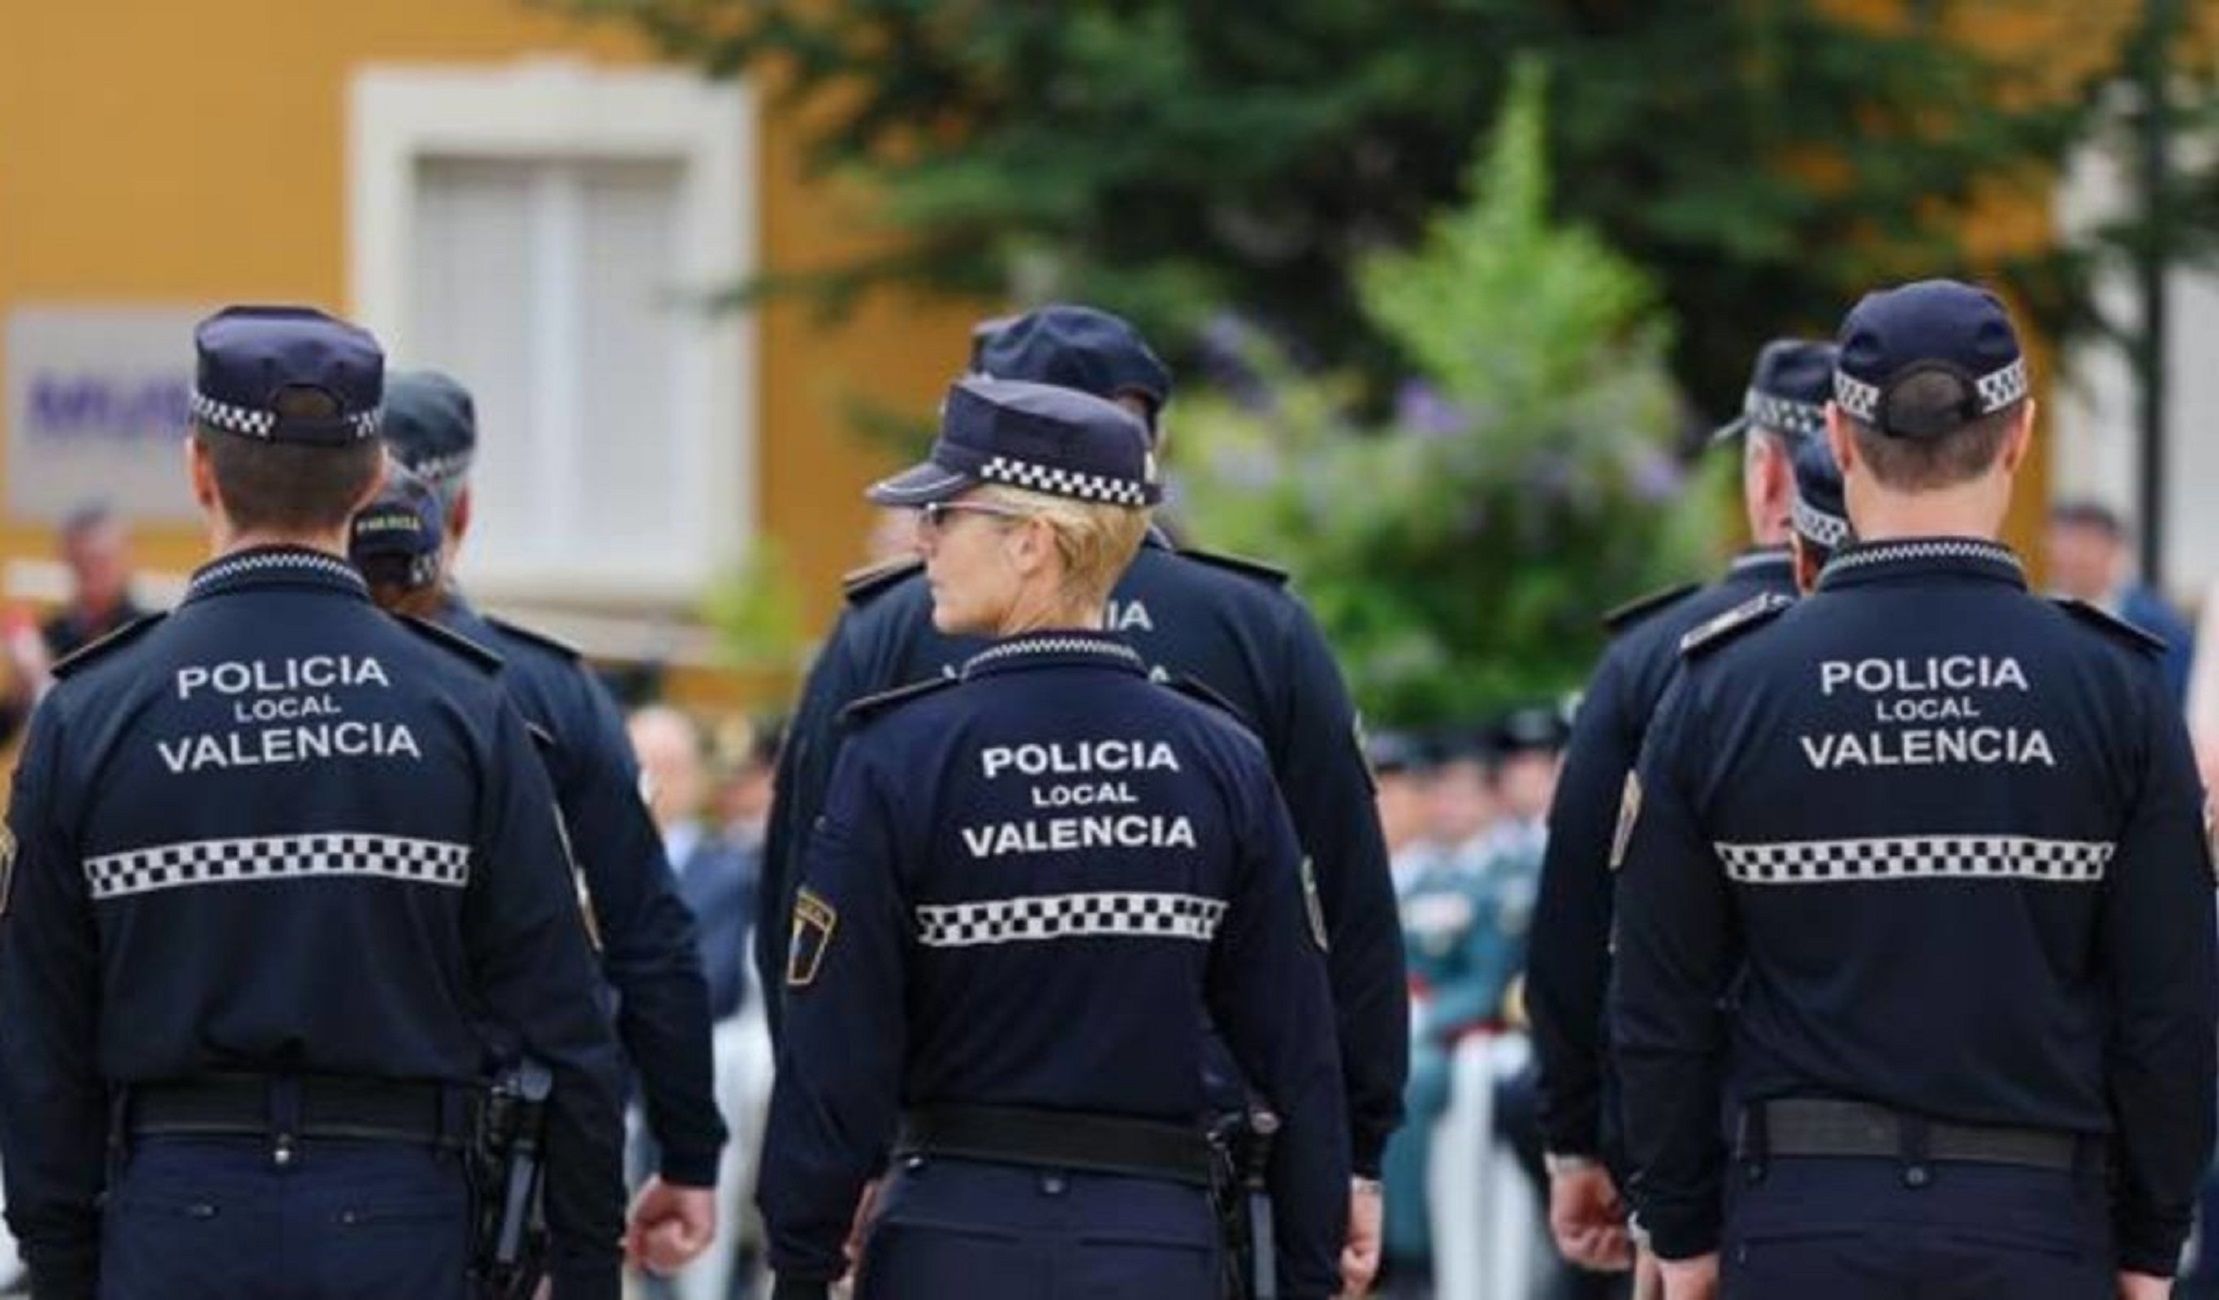 Policia local valencia/ Pixabay